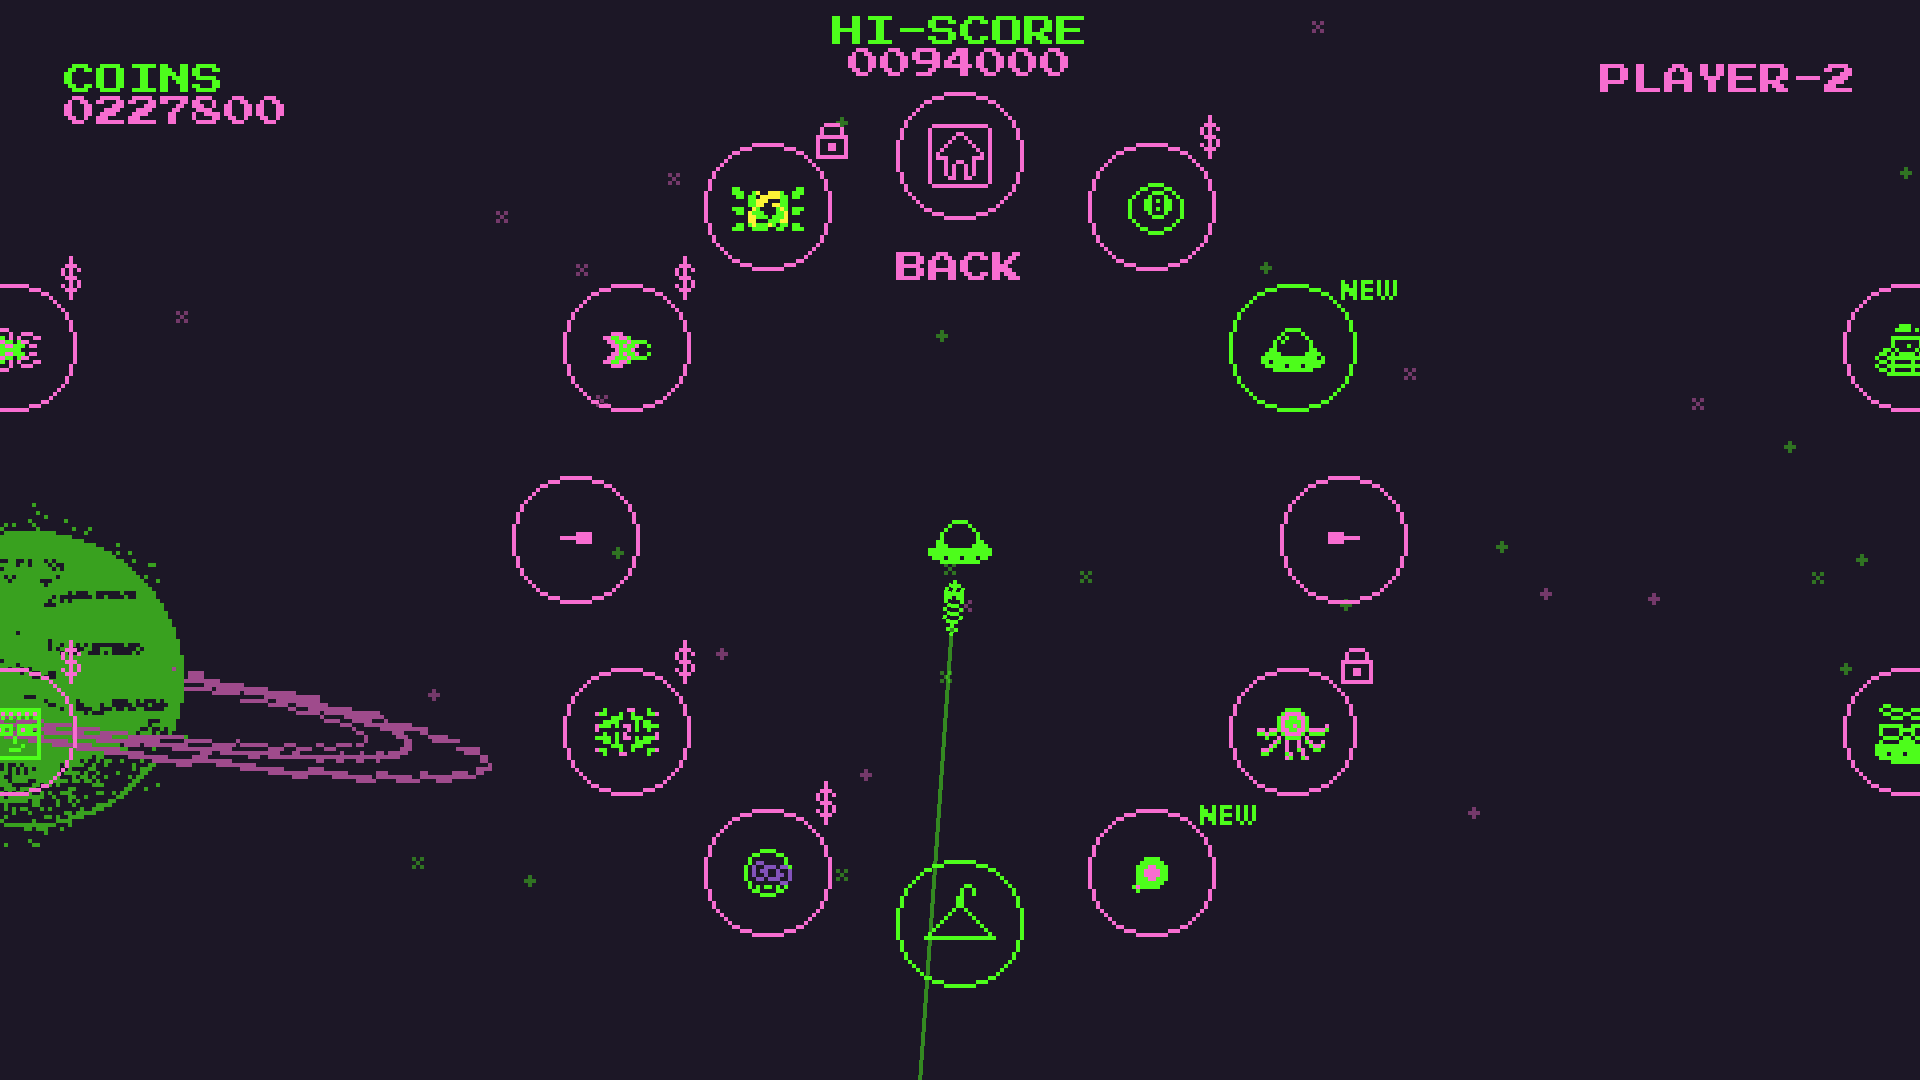 Super GX UFO screenshot game